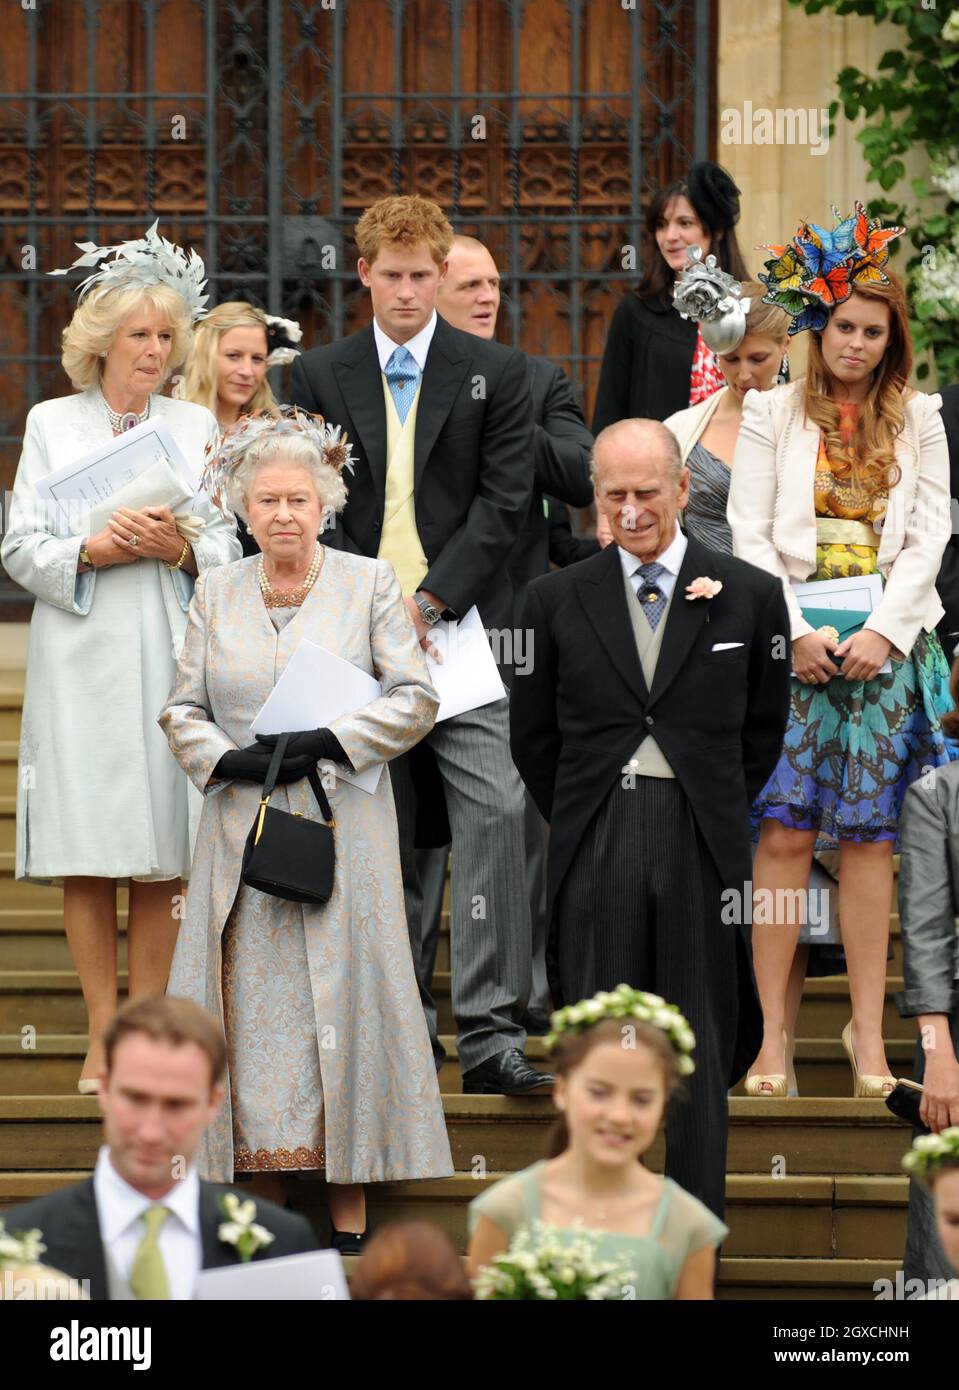 (De gauche à droite) la Camilla Duchesse de Cornwall, la reine Elizabeth II, le prince Harry, le prince Philip, le duc d'Édimbourg et la princesse Beatrice quittent la chapelle Saint-Georges après la cérémonie de mariage de Peter Phillips et Autumn Kelly au château de Winsor, à Windsor. Banque D'Images